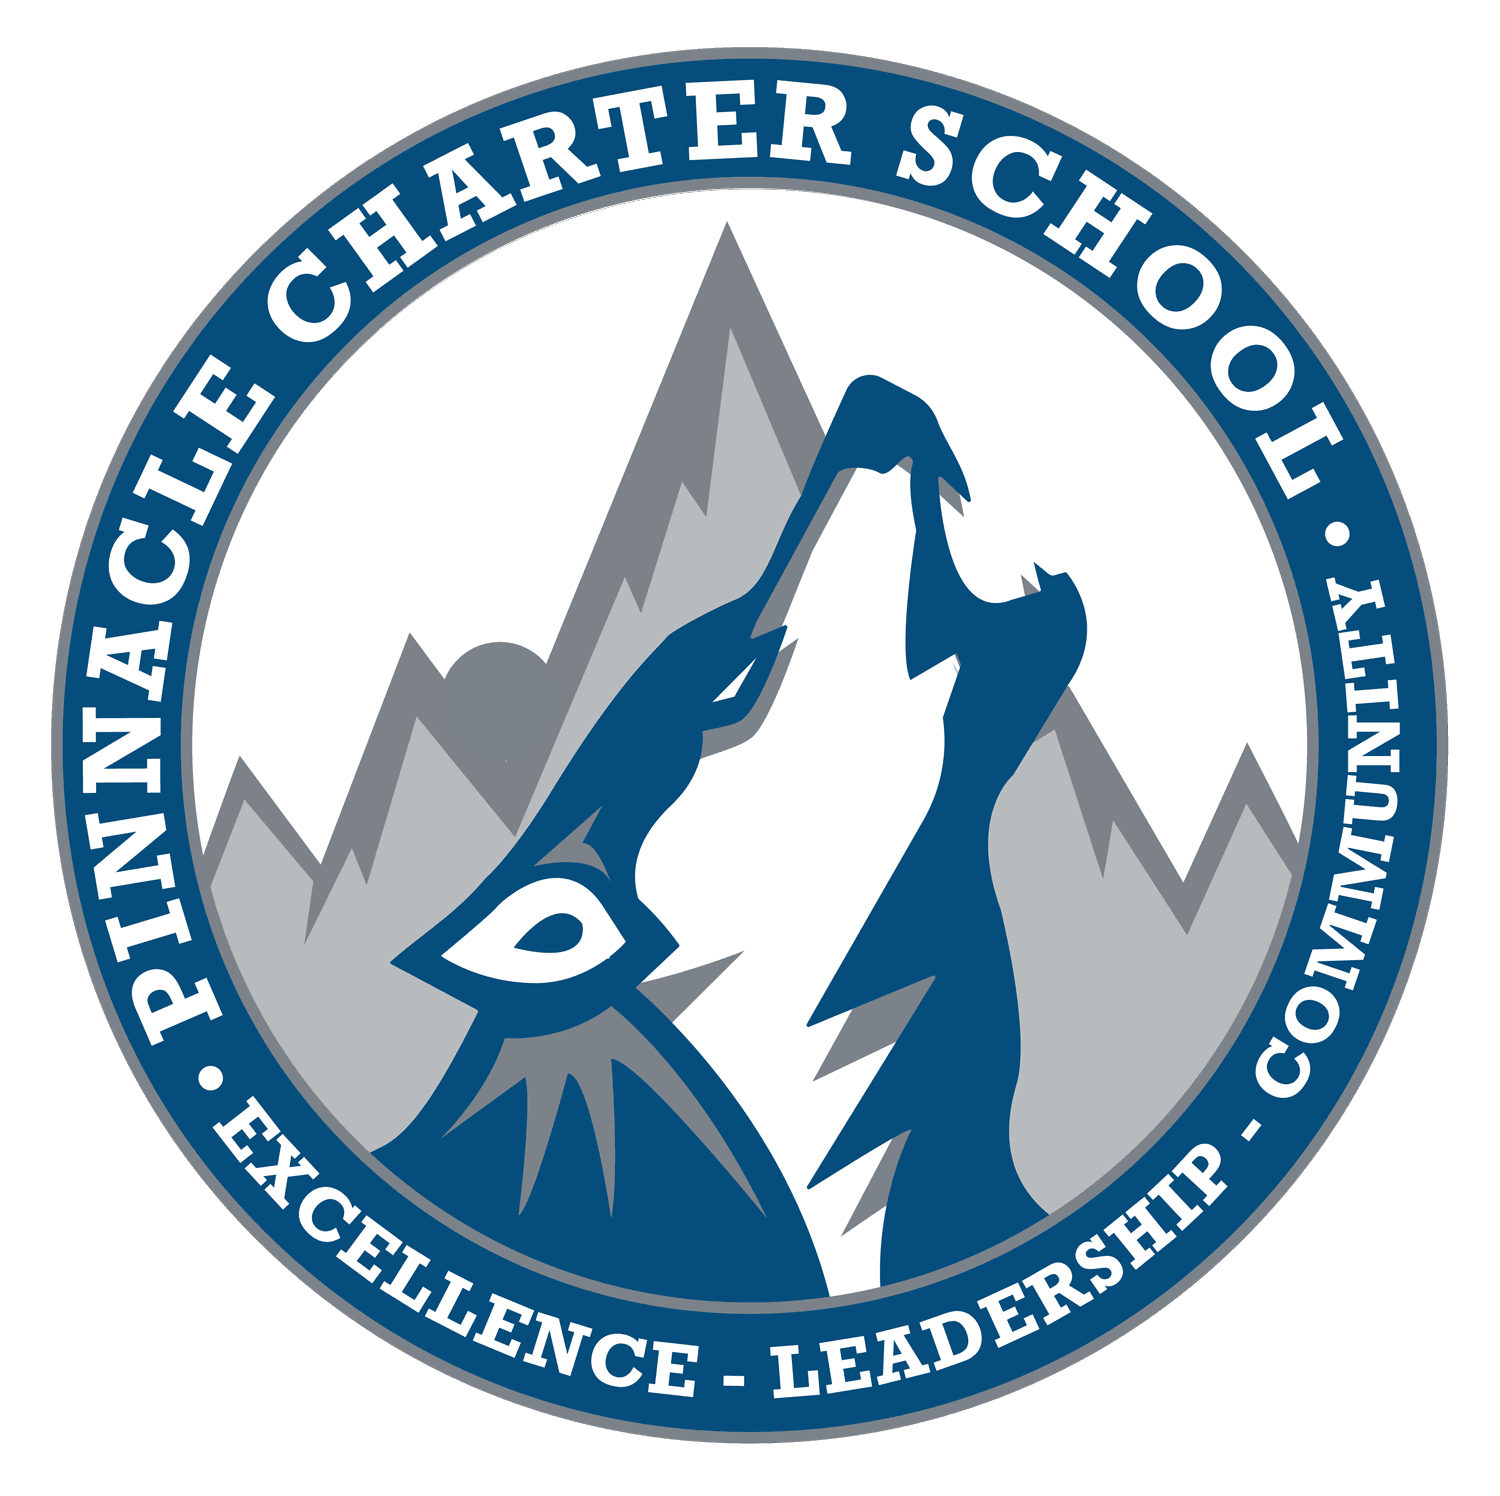 Pinnacle Charter School